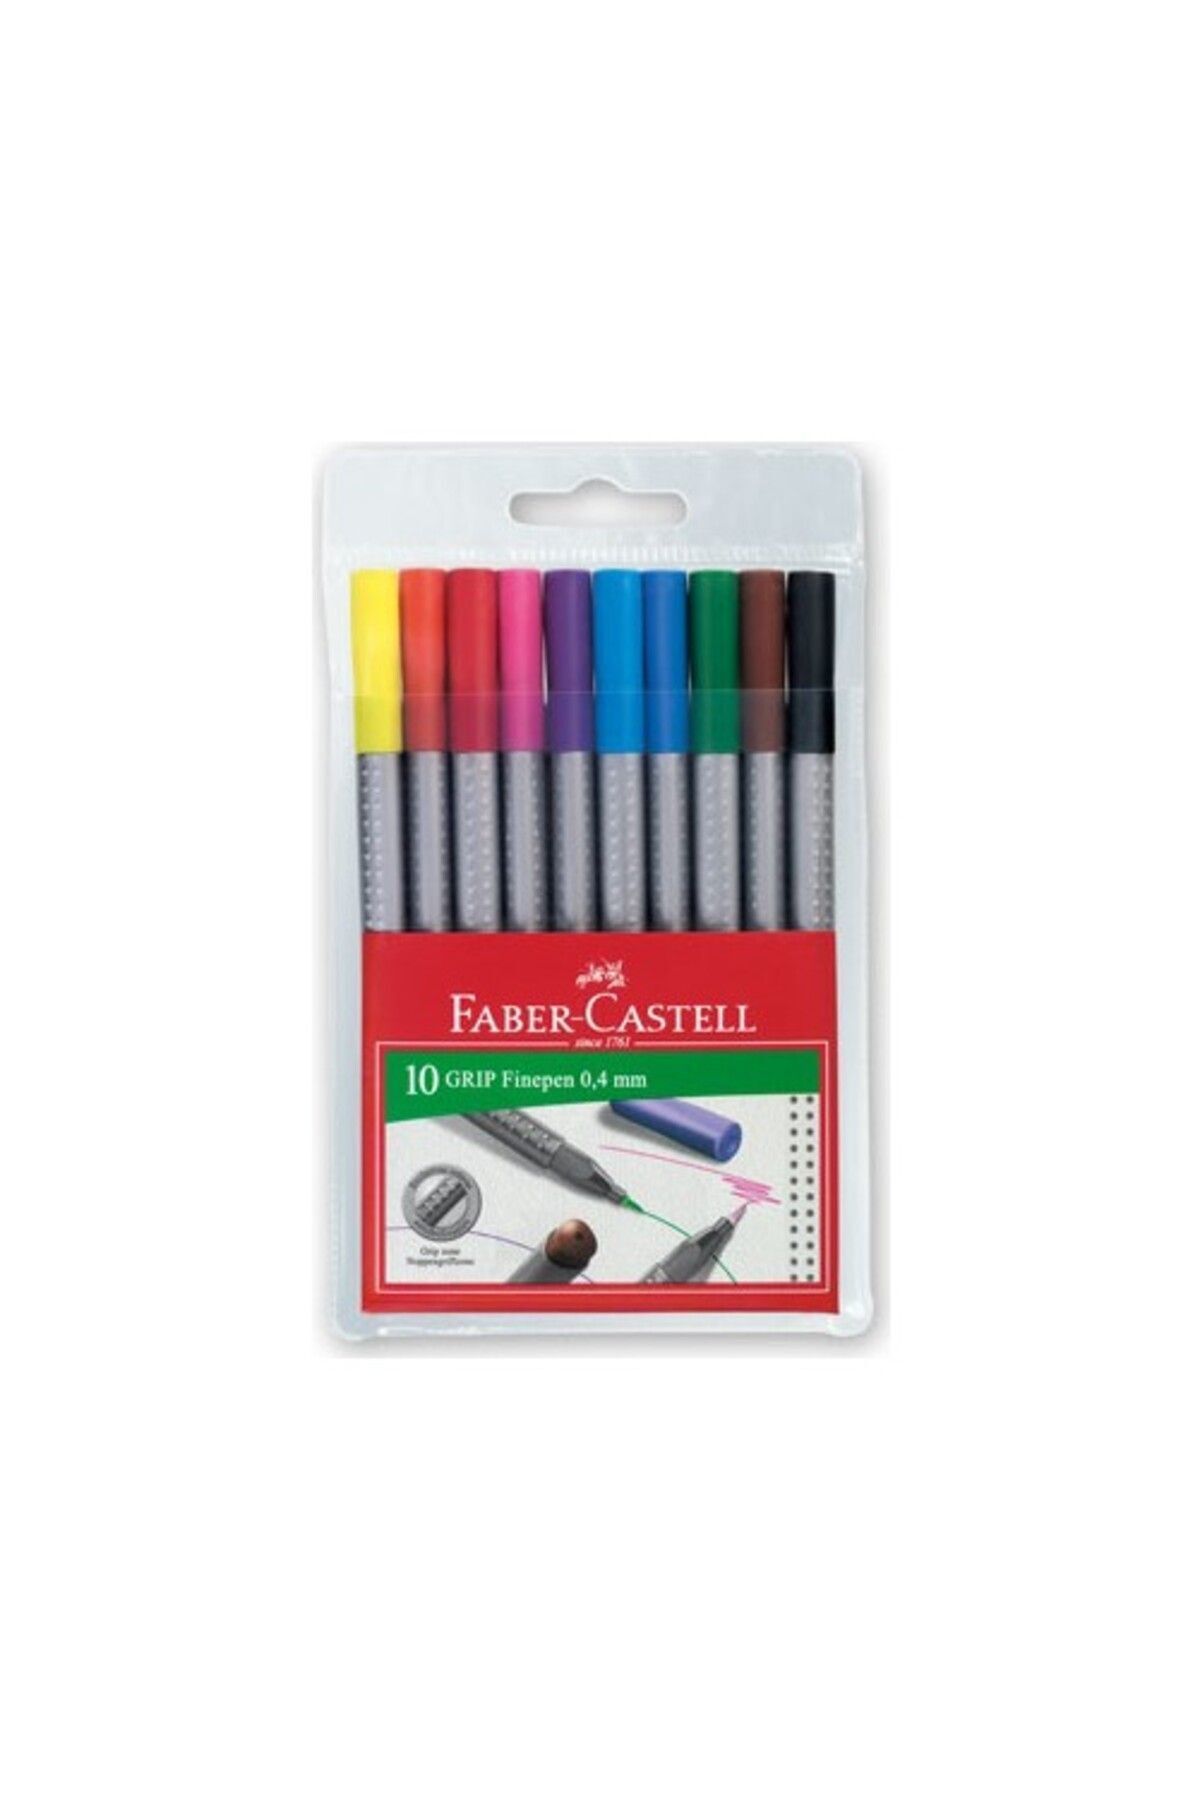 Faber Castell Faber-castell Grip Finepen Keçe Uç 0.4mm 10'lu Karton Kutu